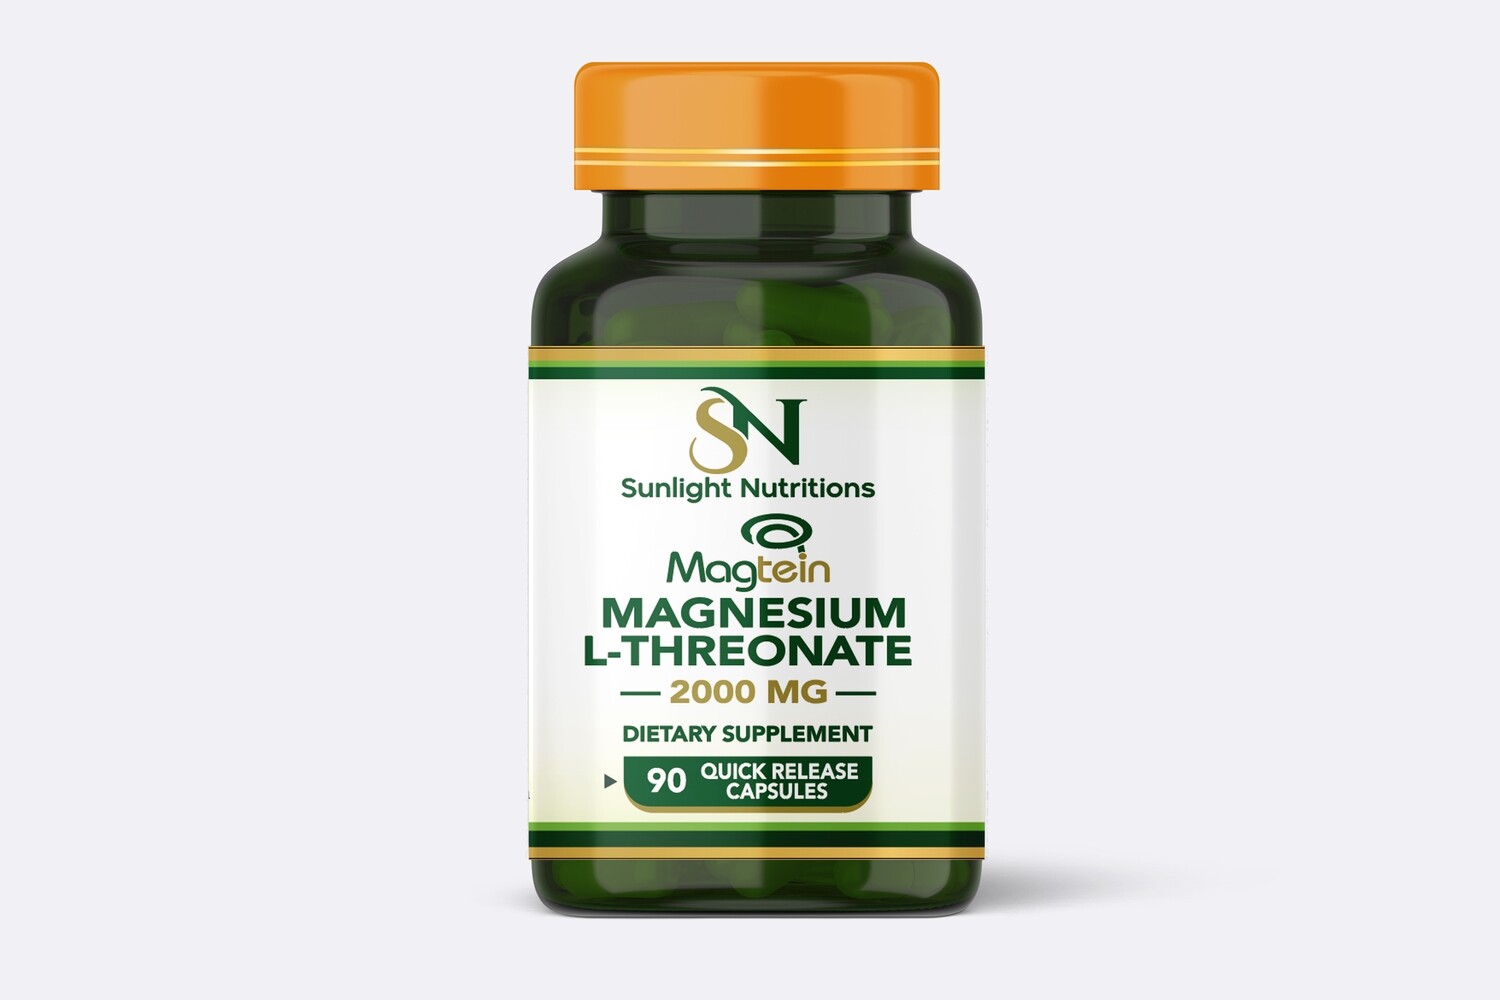 Magnesium L-Threonate Magtein, 90 Quick Release Capsules